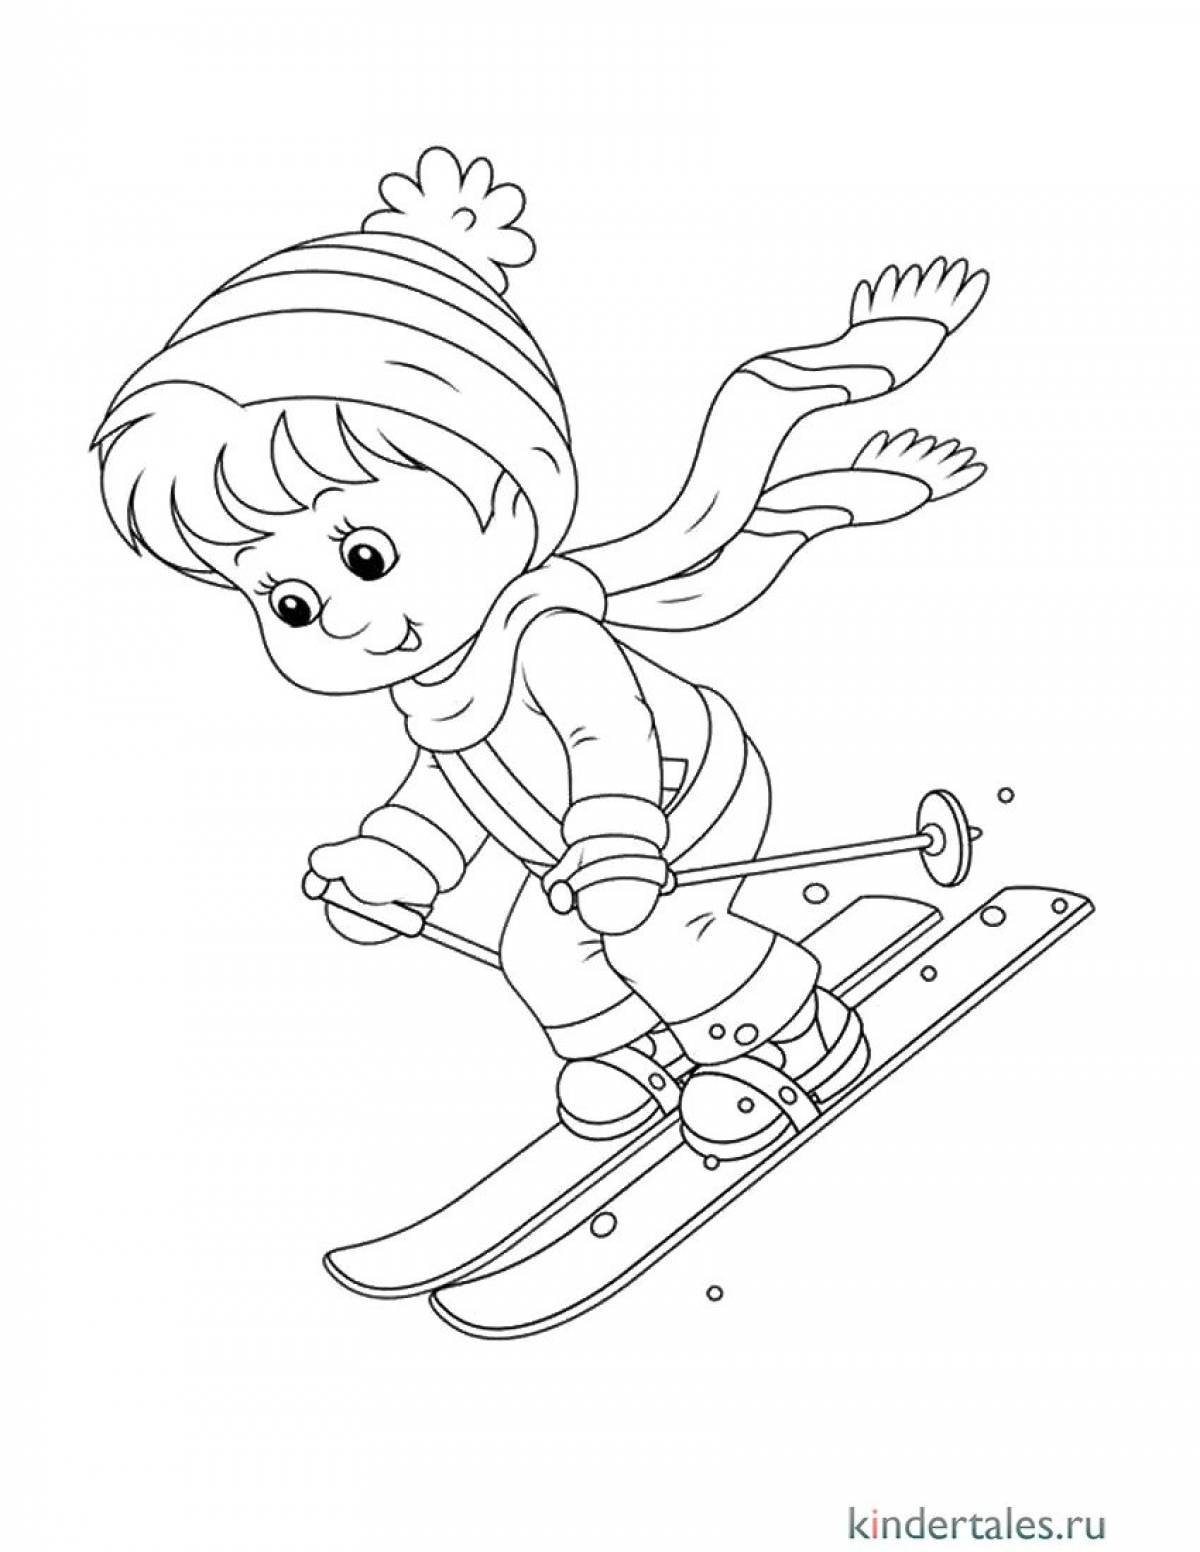 Стимулирующая раскраска лыжника для детей